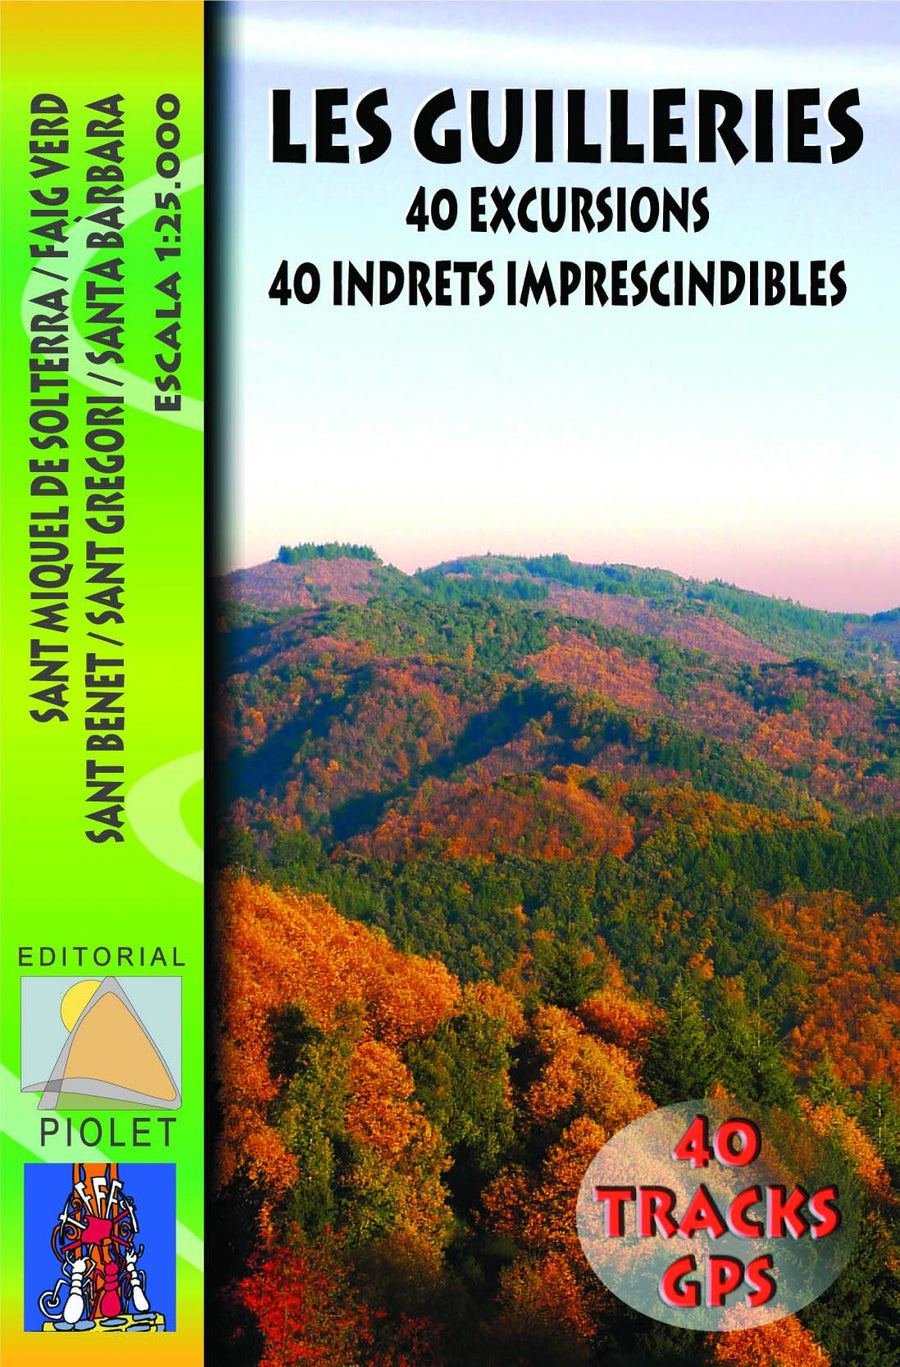 Carte de randonnée - Les Guilleries : 40 randos, 40 lieux incontournables (Catalogne) | Piolet carte pliée Editorial Piolet 